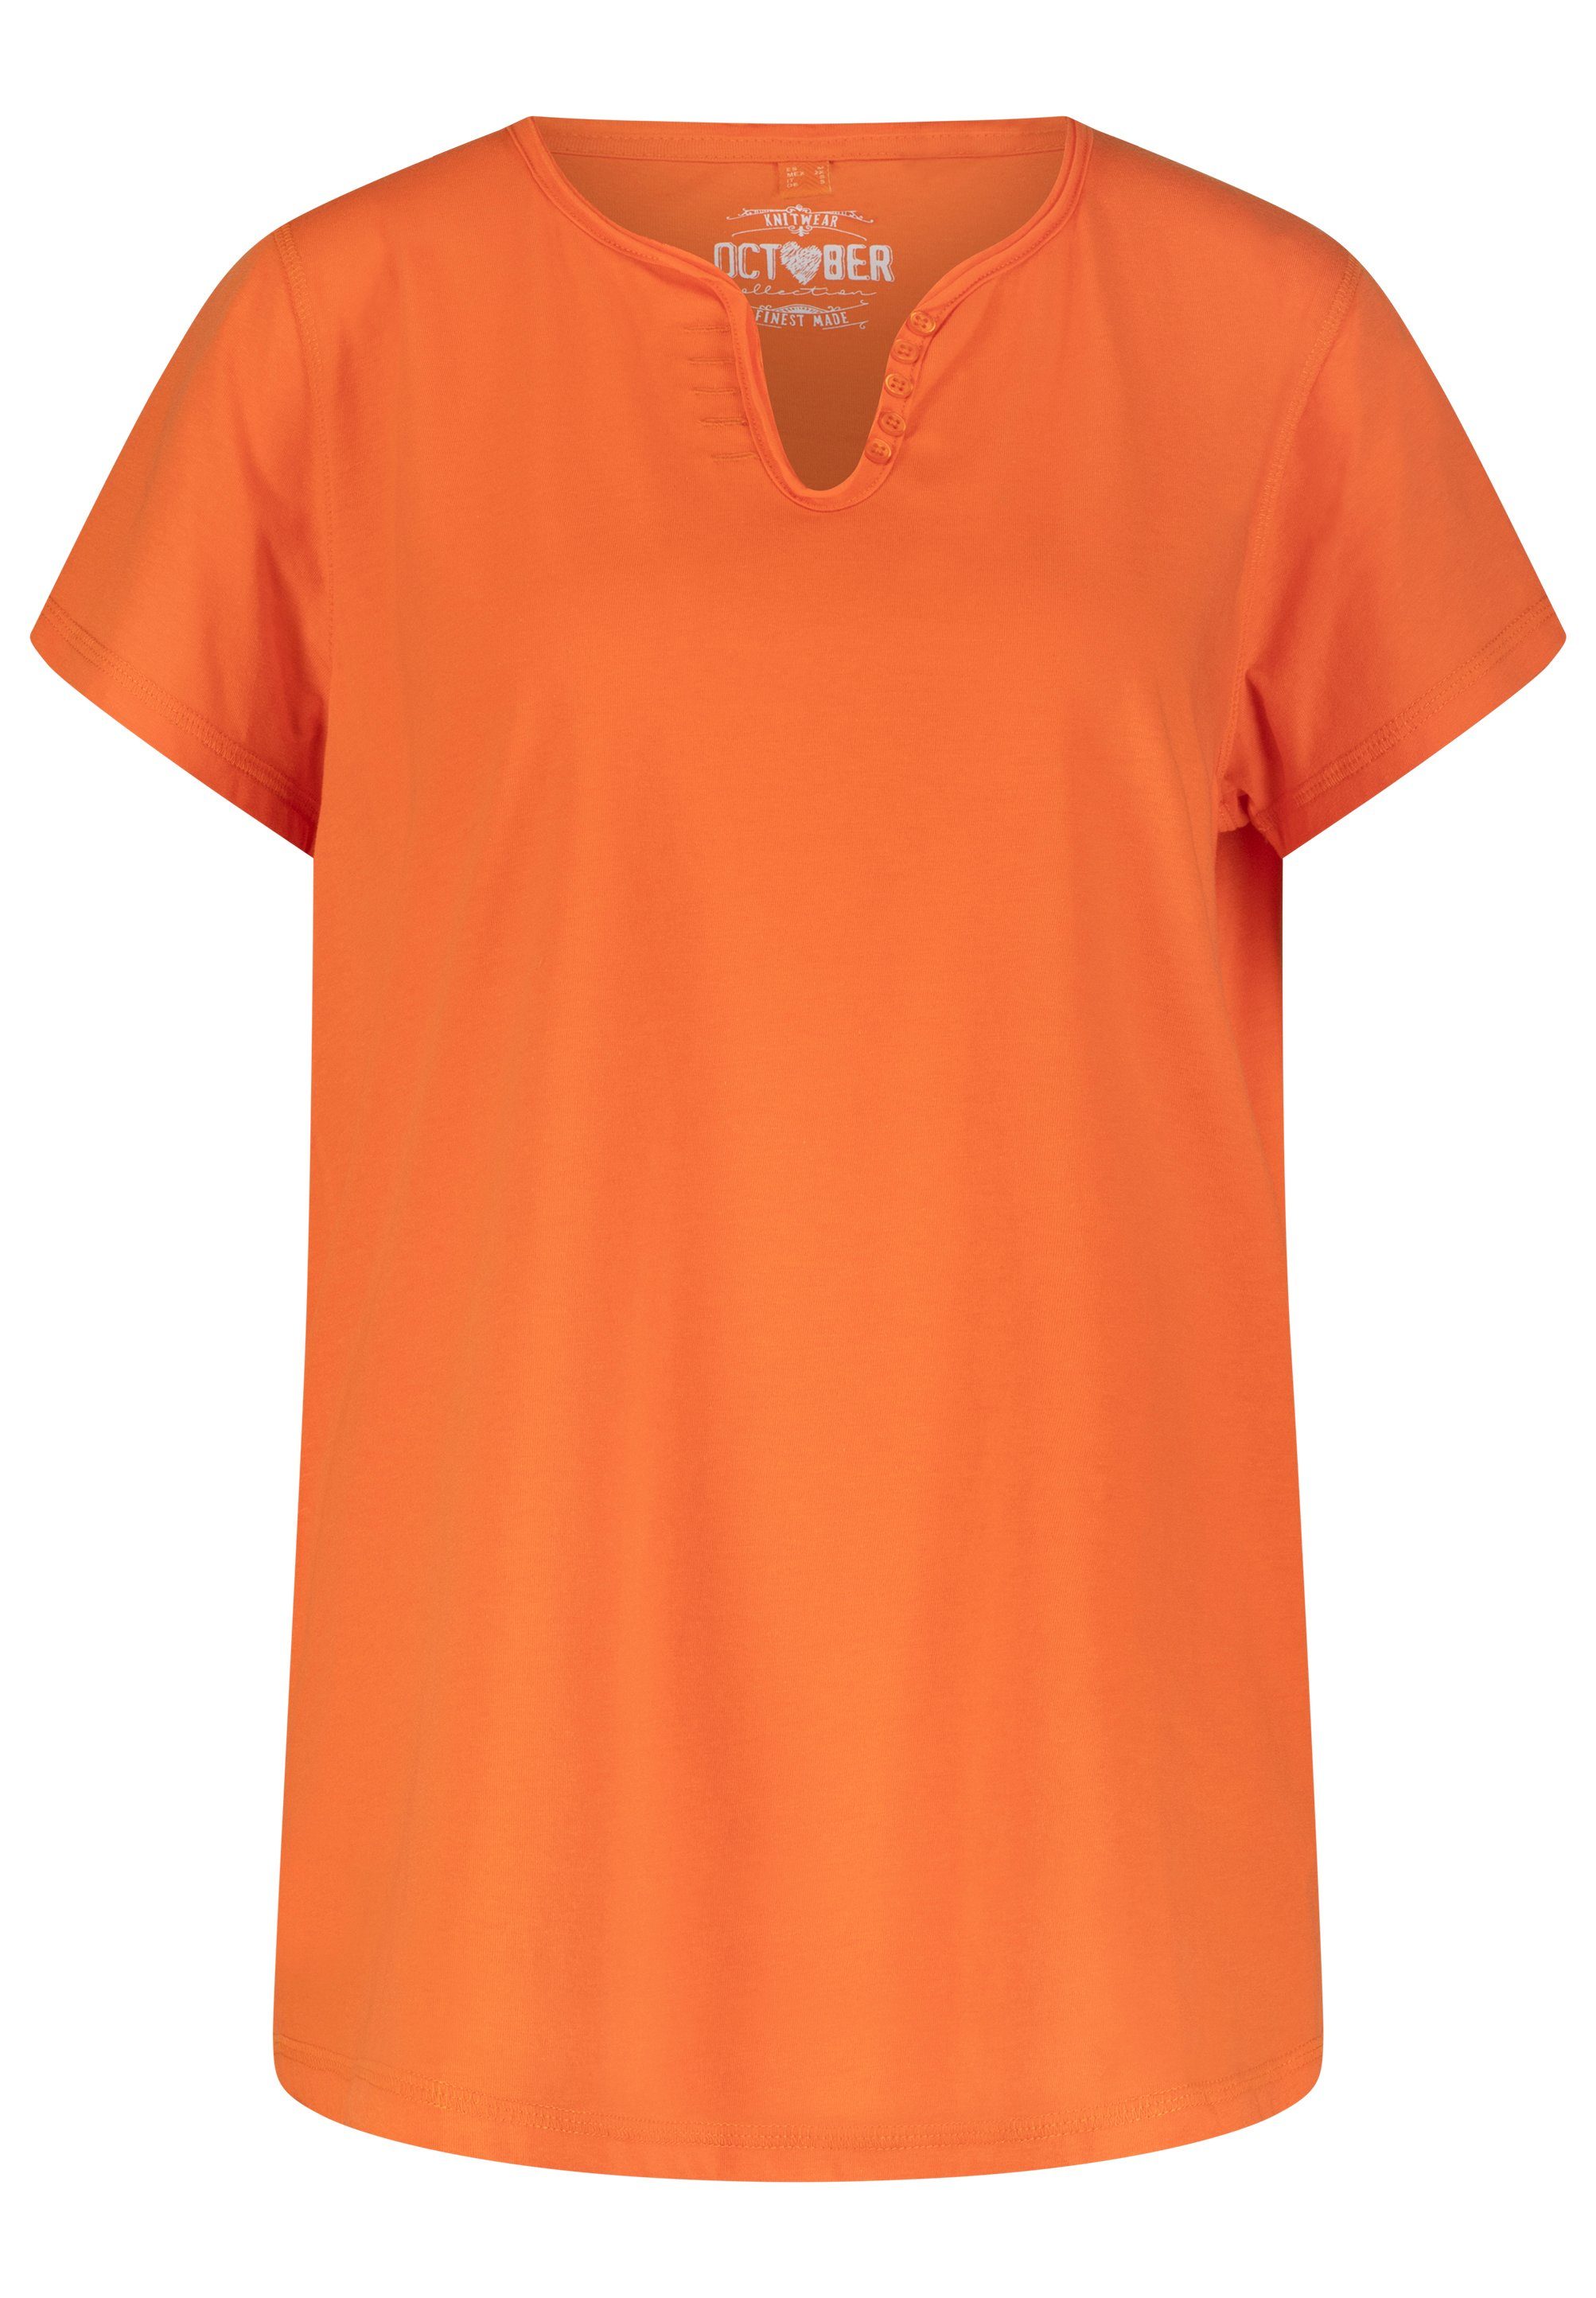 mit October dekorativen T-Shirt orange Knöpfen